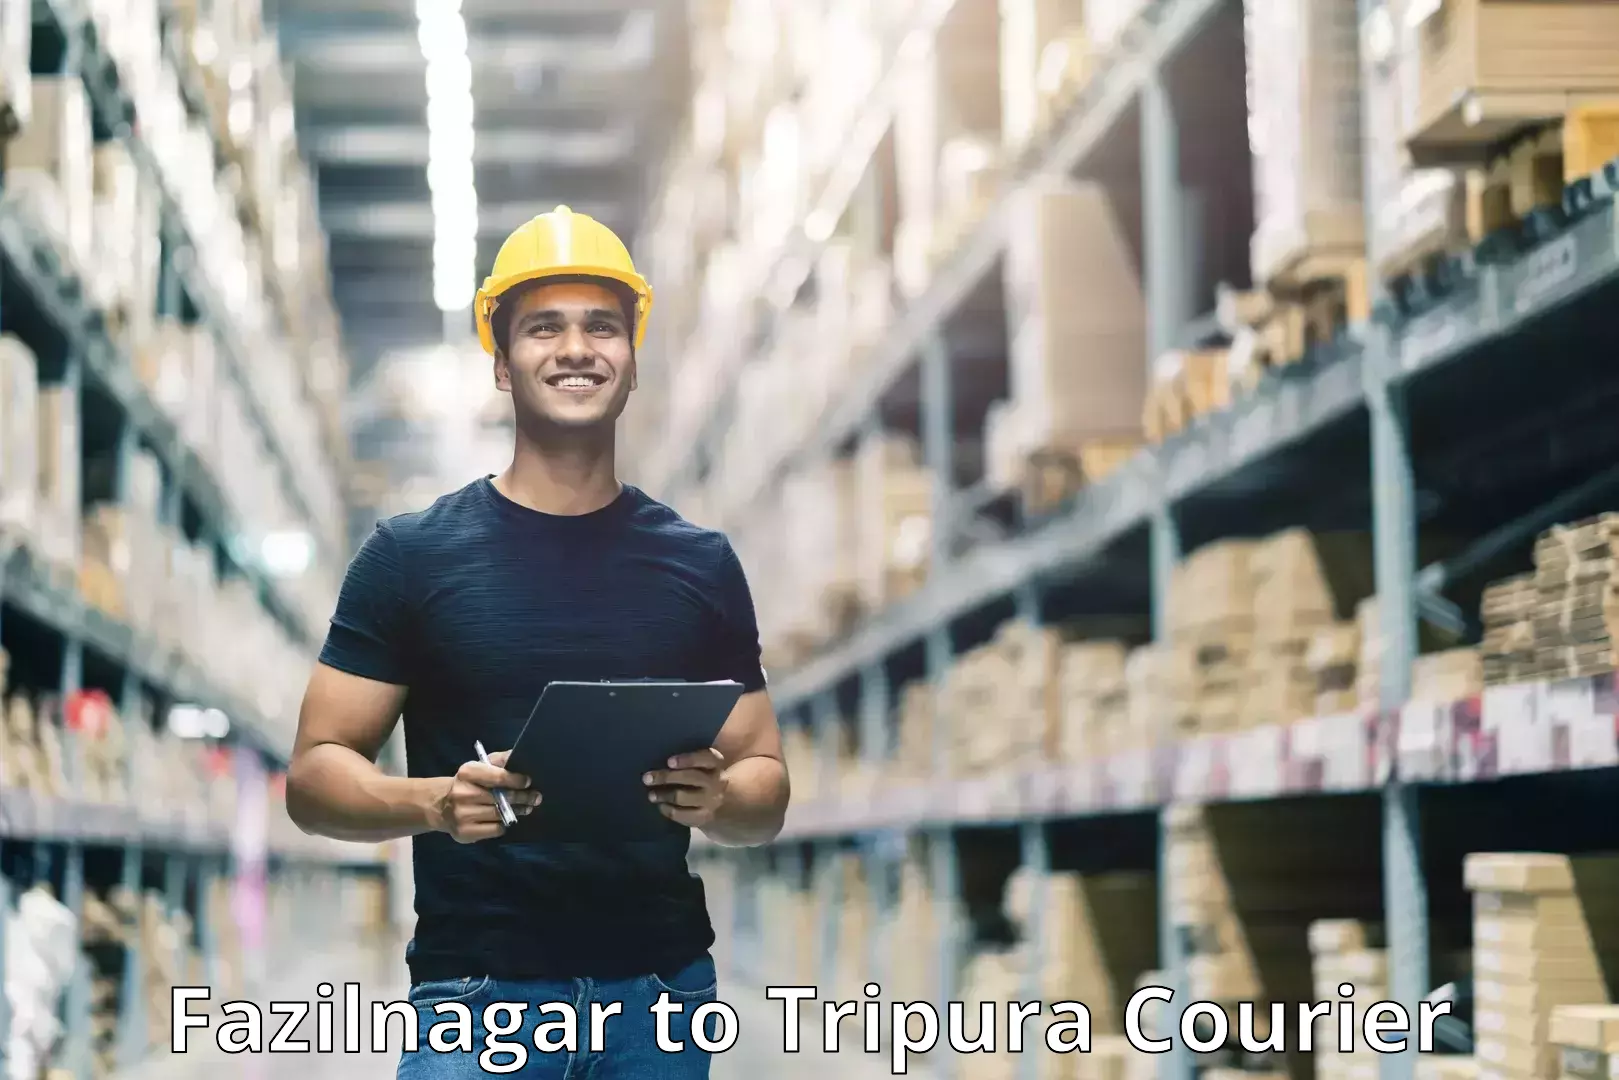 Affordable parcel service Fazilnagar to Amarpur